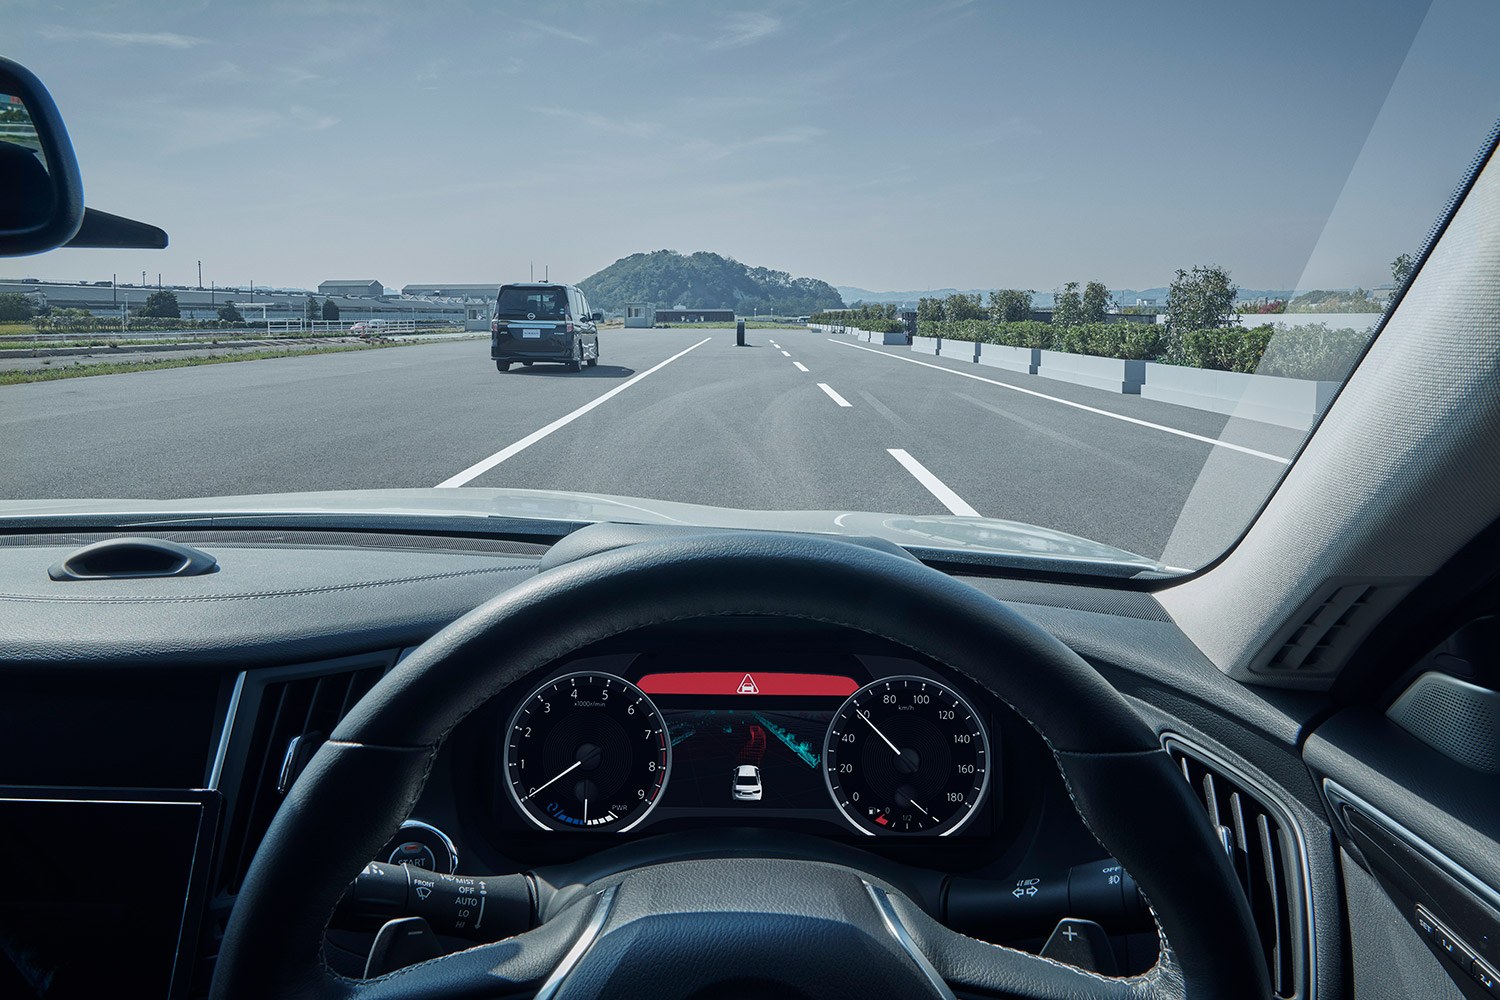 日产全新驾驶辅助技术研发进展 可应对复杂驾驶环境